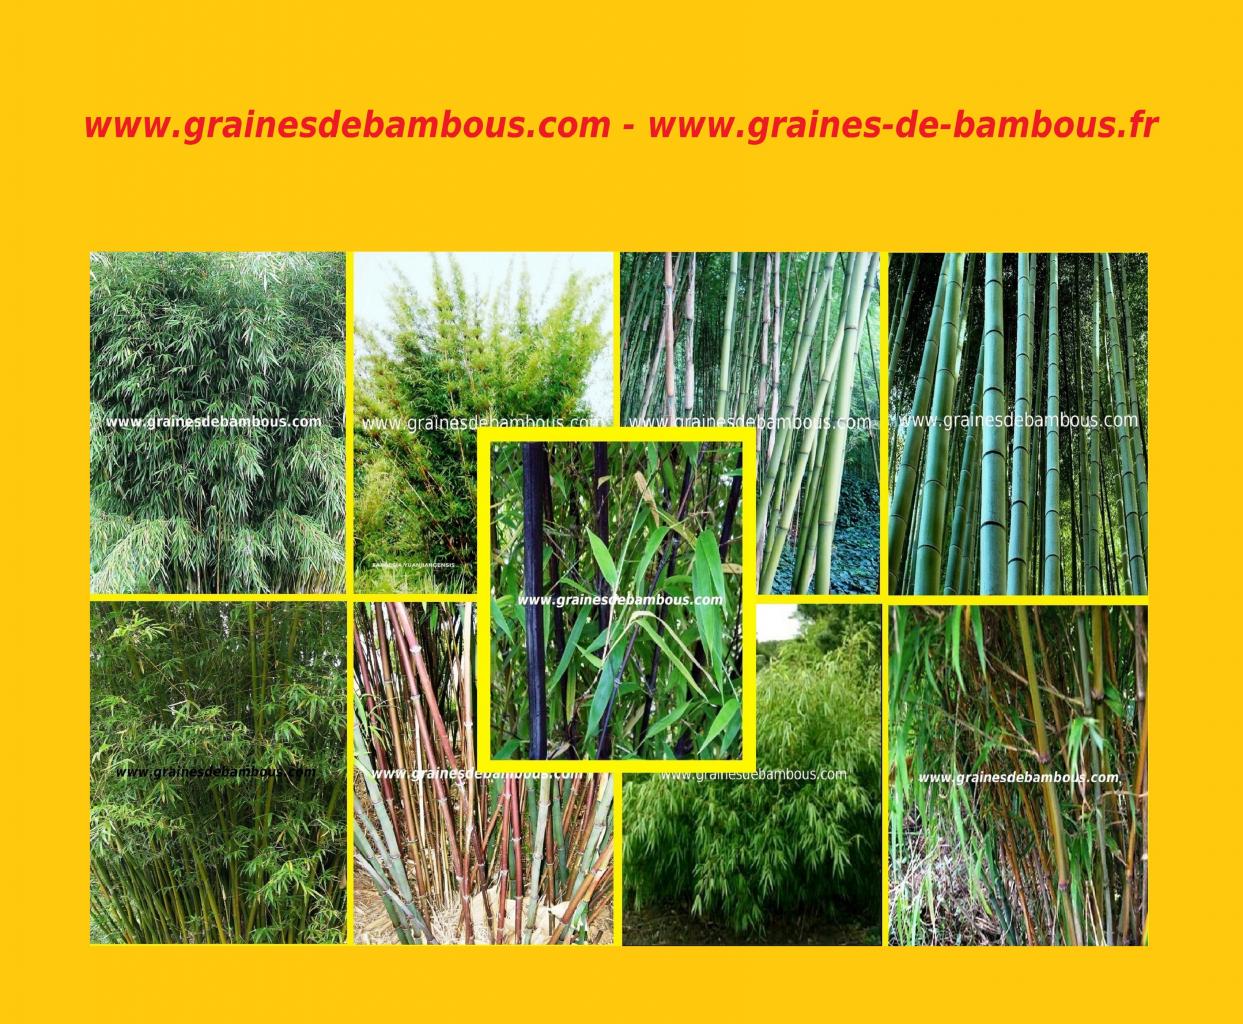 graines-de-bambous-pour-votre-jardin-seeds-samen.jpg